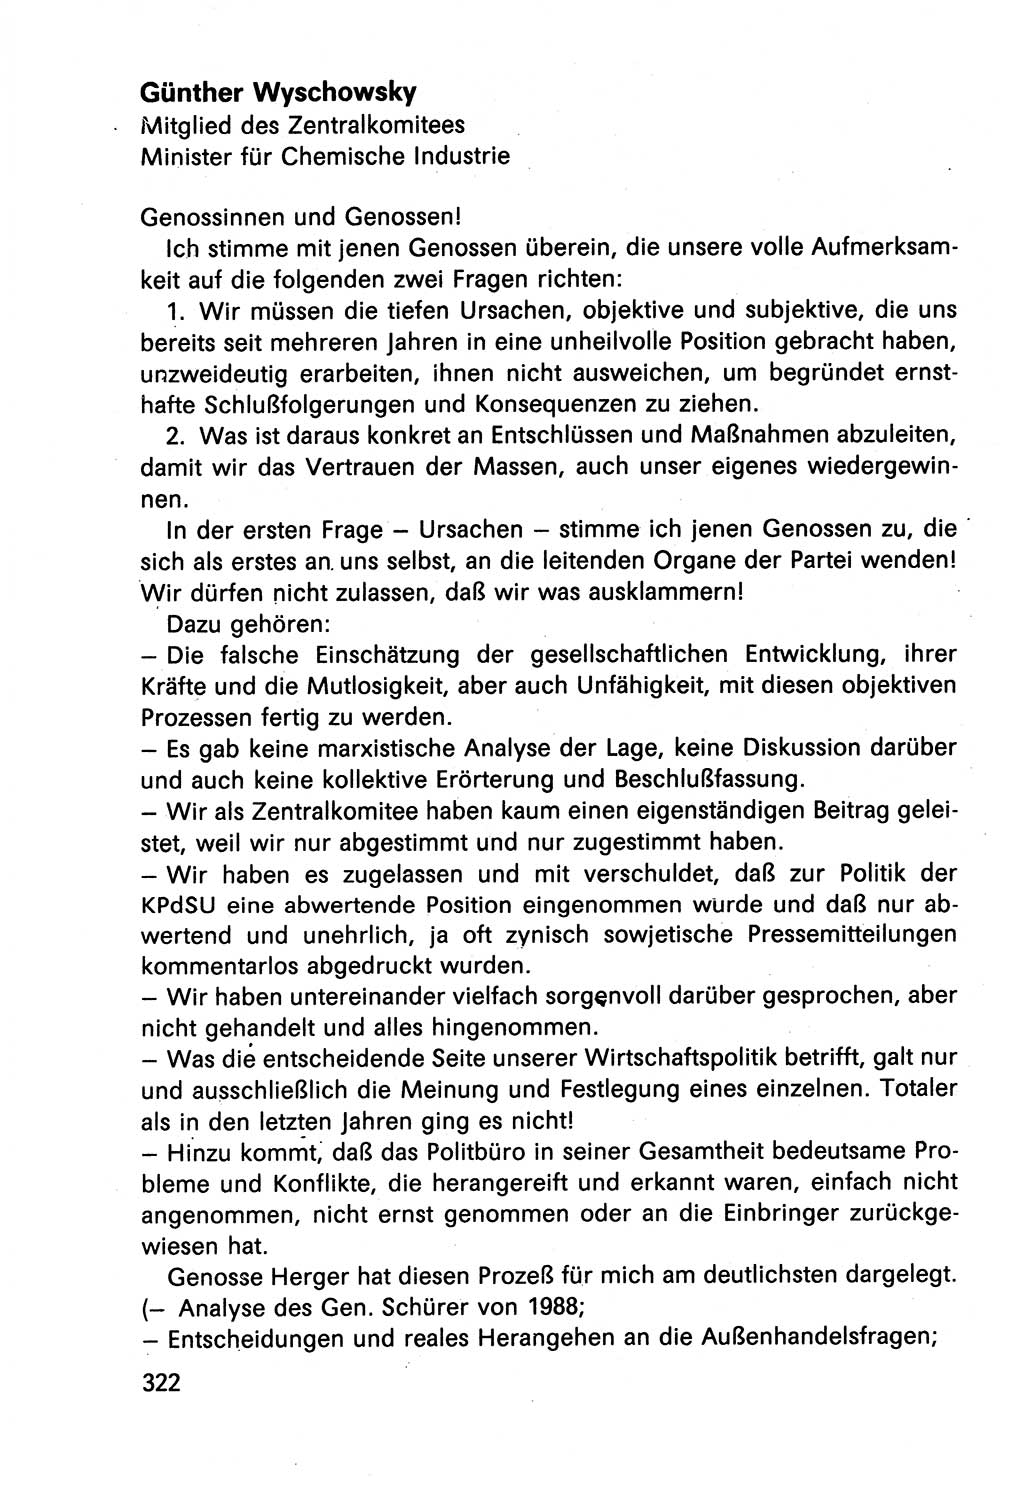 Diskussionsbeiträge, 10. Tagung des ZK (Zentralkomitee) der SED (Sozialistische Einheitspartei Deutschlands) [Deutsche Demokratische Republik (DDR)] 1989, Seite 322 (Disk.-Beitr. 10. Tg. ZK SED DDR 1989, S. 322)